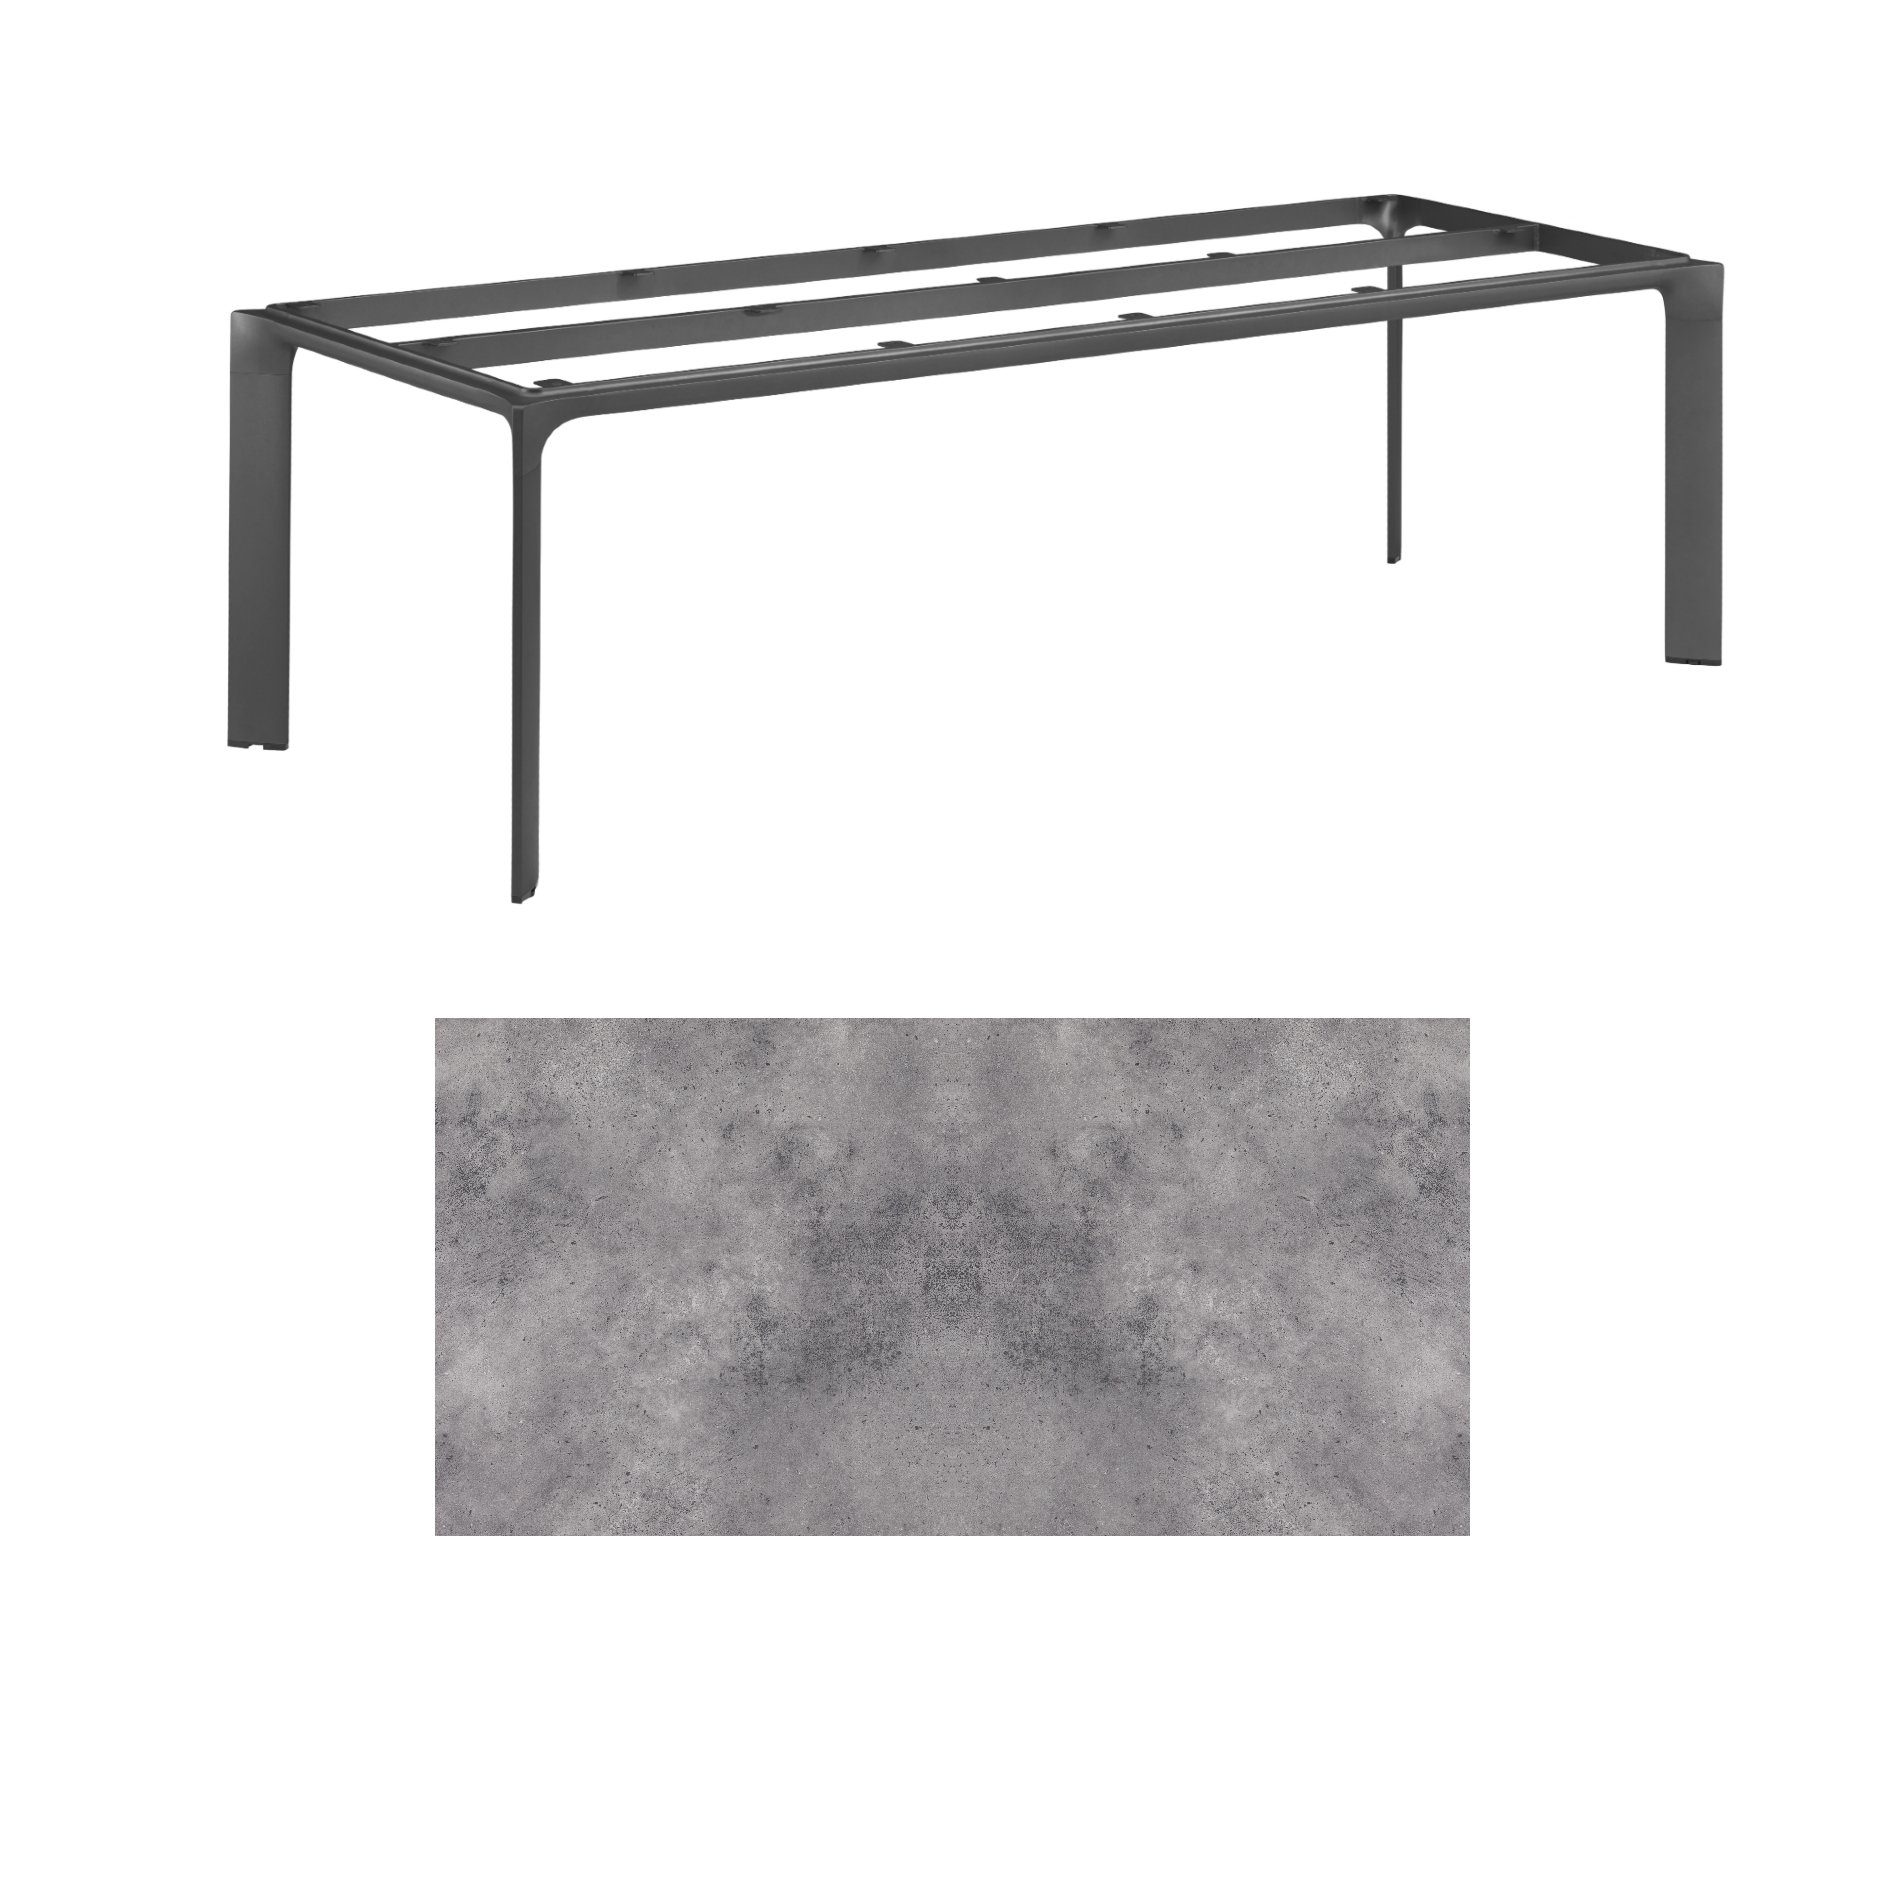 Kettler "Diamond" Tischsystem Gartentisch, Gestell Aluminium anthrazit, Tischplatte HPL anthrazit, 220x95 cm